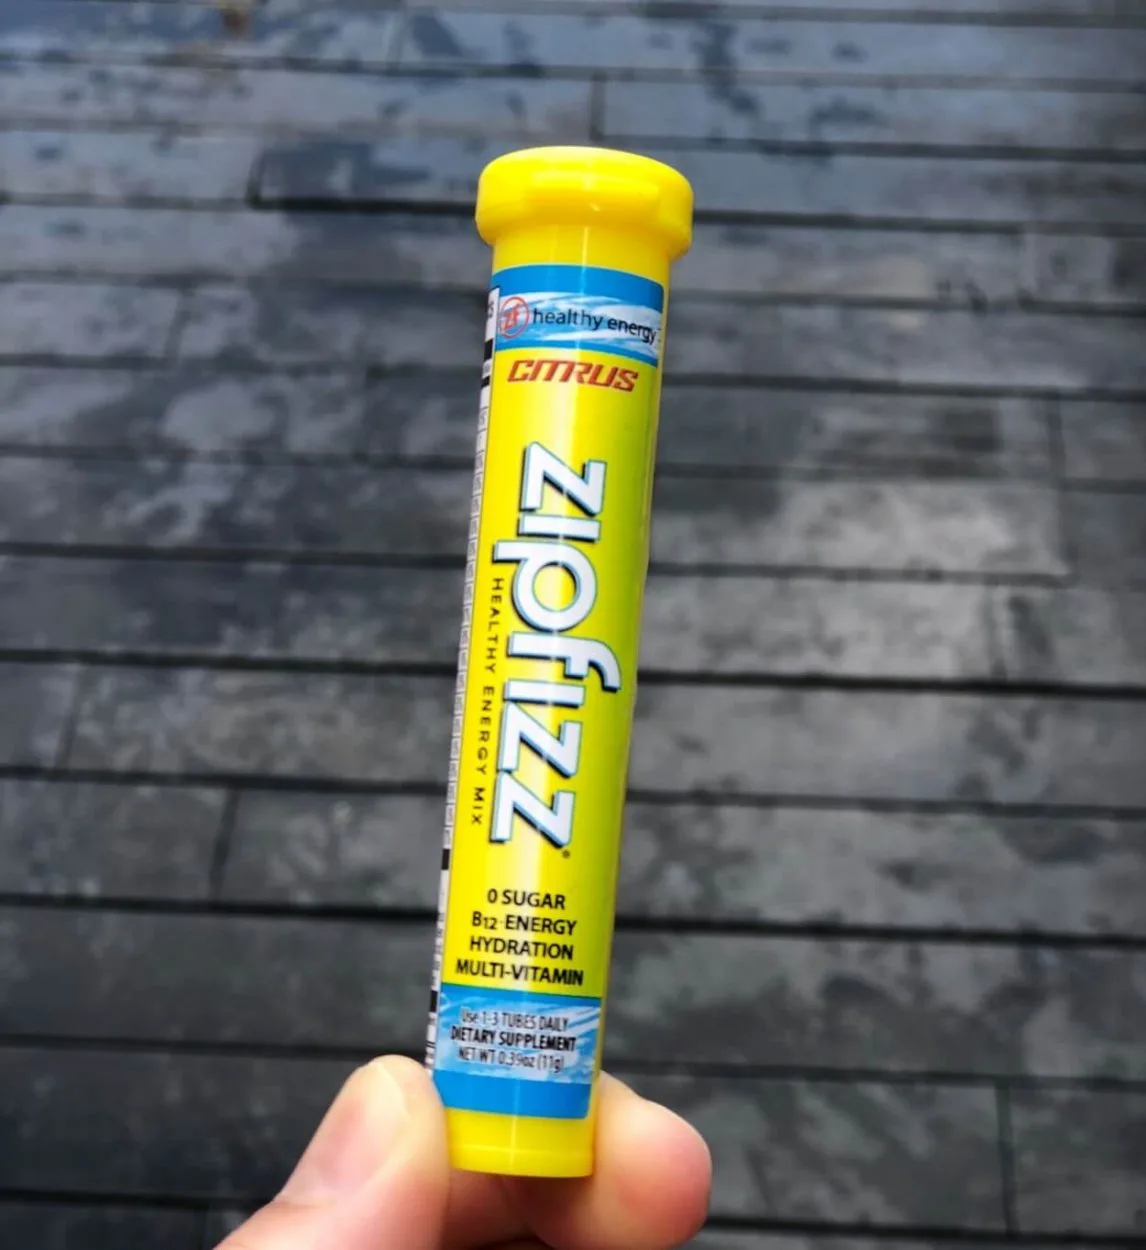 A tube of Zipfizz.